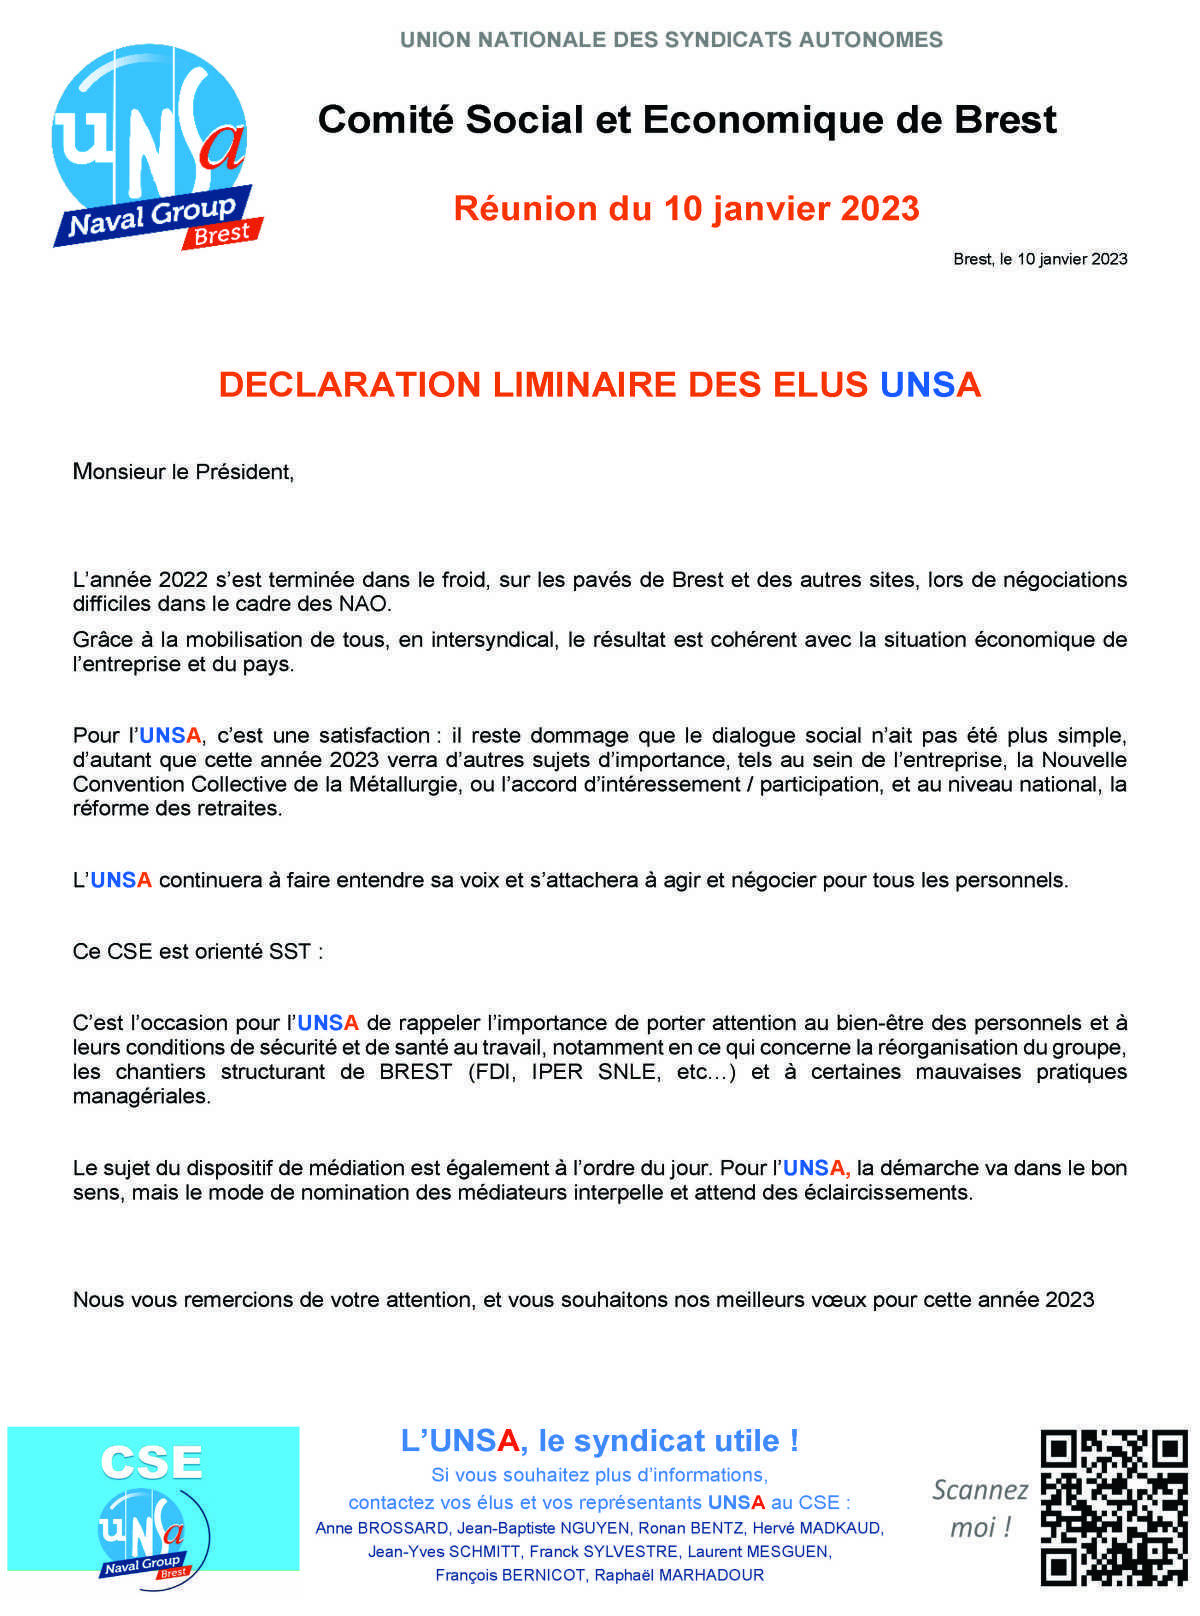 CSE de Brest - Réunion du 10 janvier 2023 - Déclaration liminaire